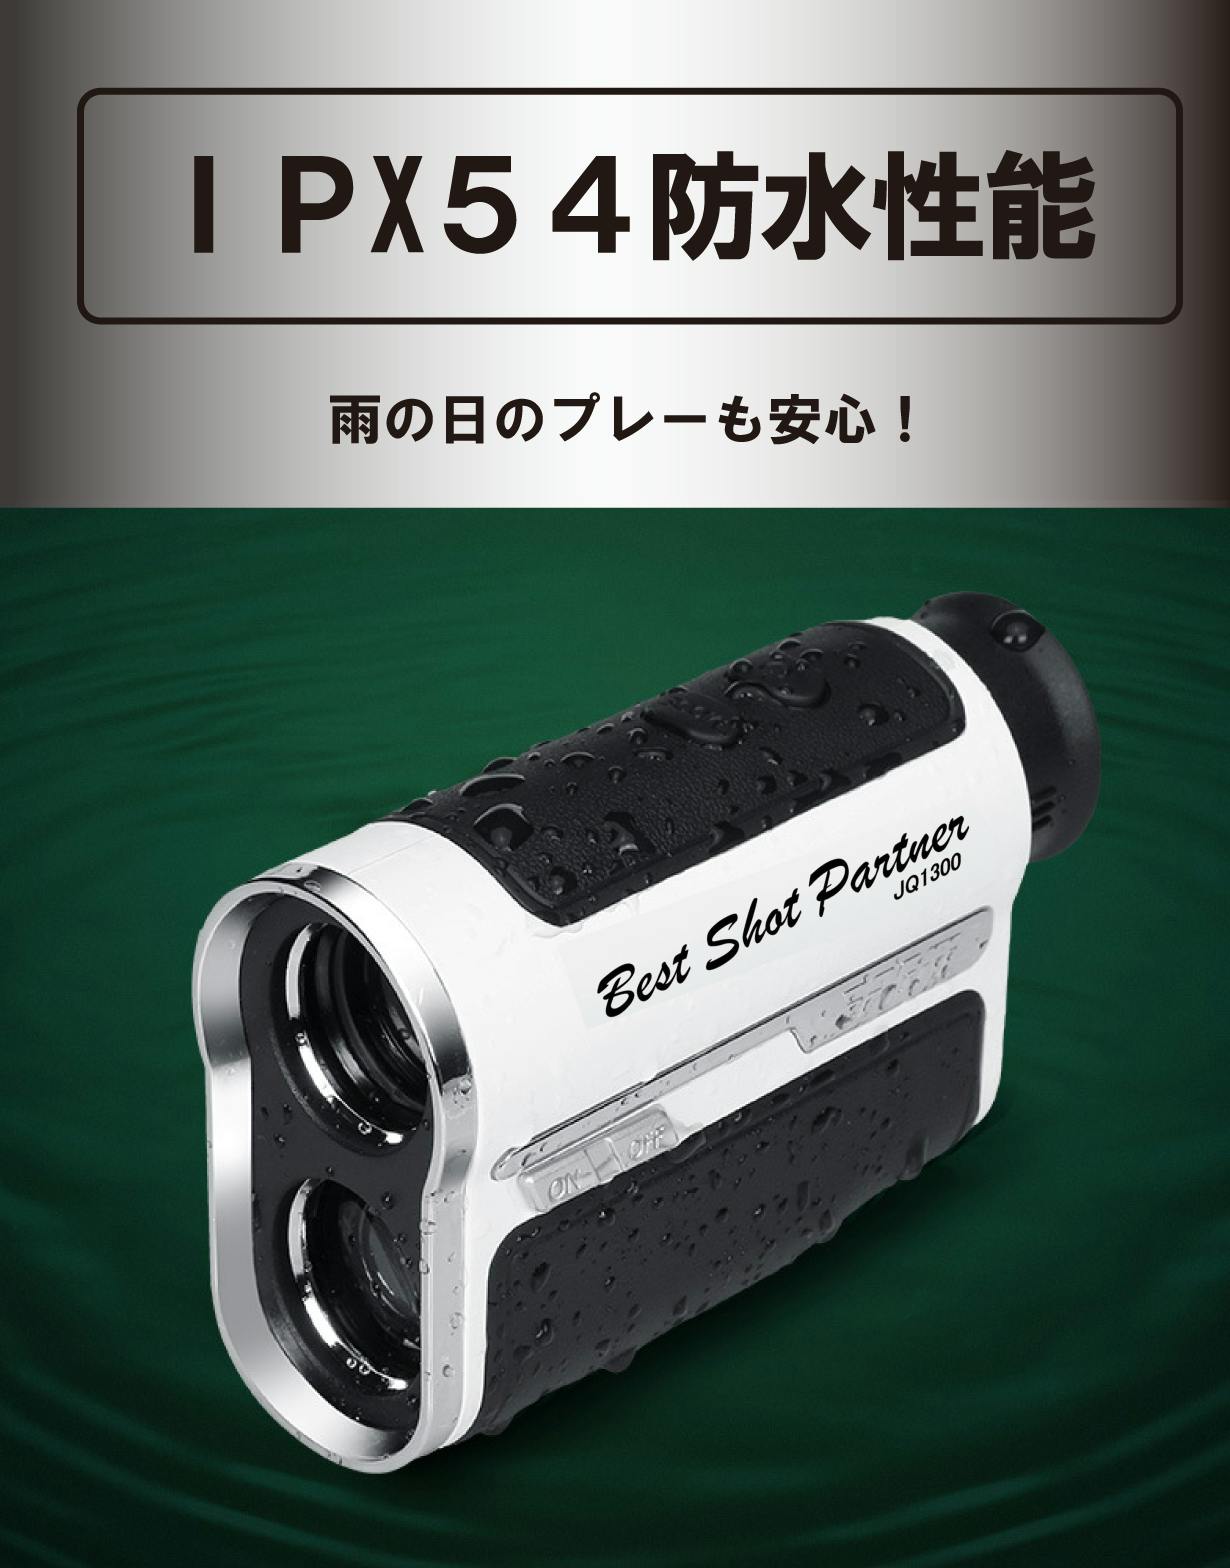 手ブレ抑制7倍レンズで快適サーチ！USB充電型 高性能ゴルフレーザー 